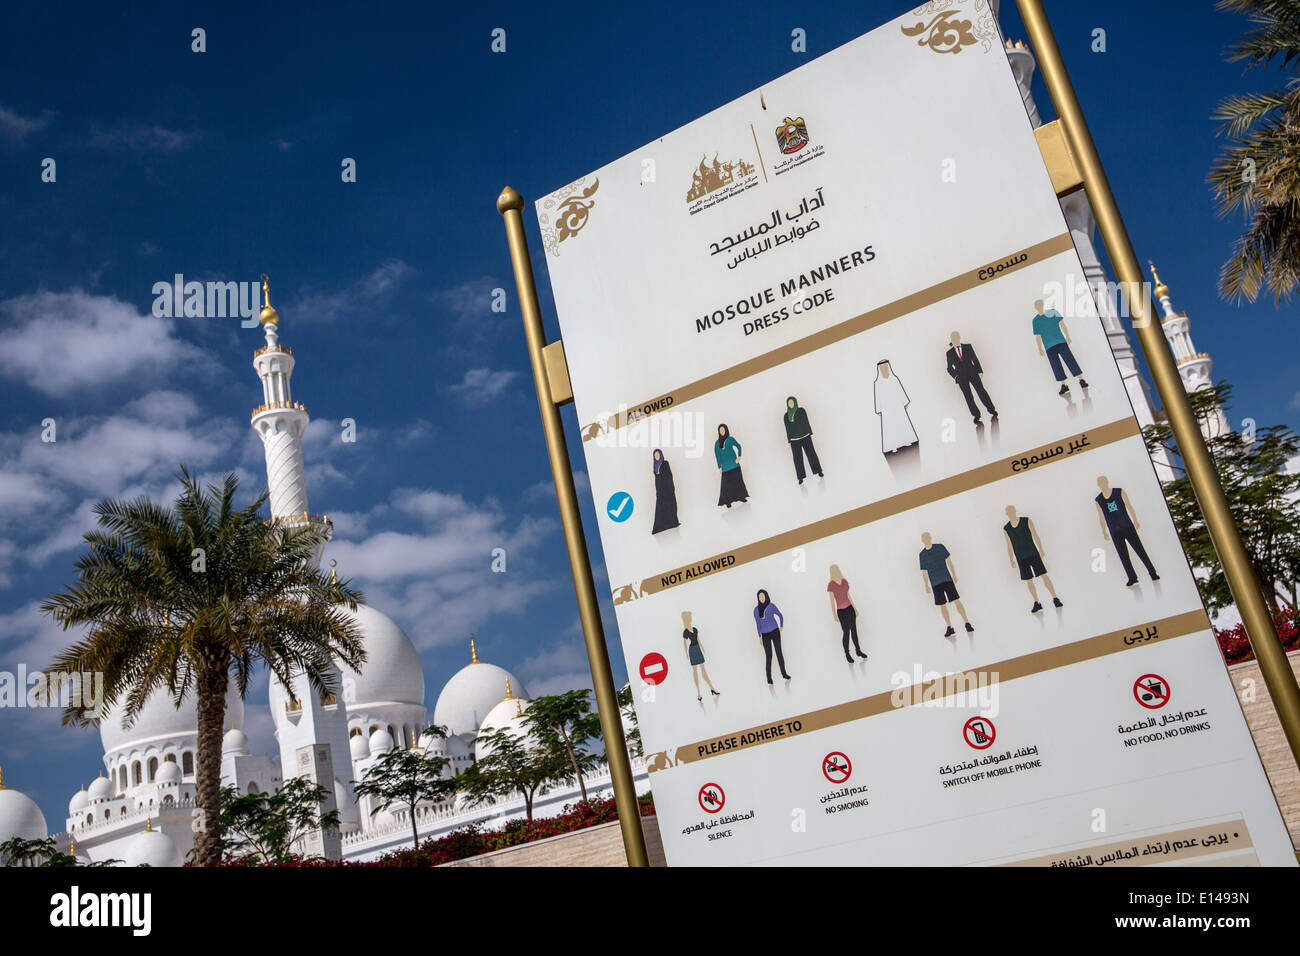 Emirats arabes unis, Abu Dhabi, Grande Mosquée de Sheikh Zayed. Code vestimentaire manières mosquée Banque D'Images